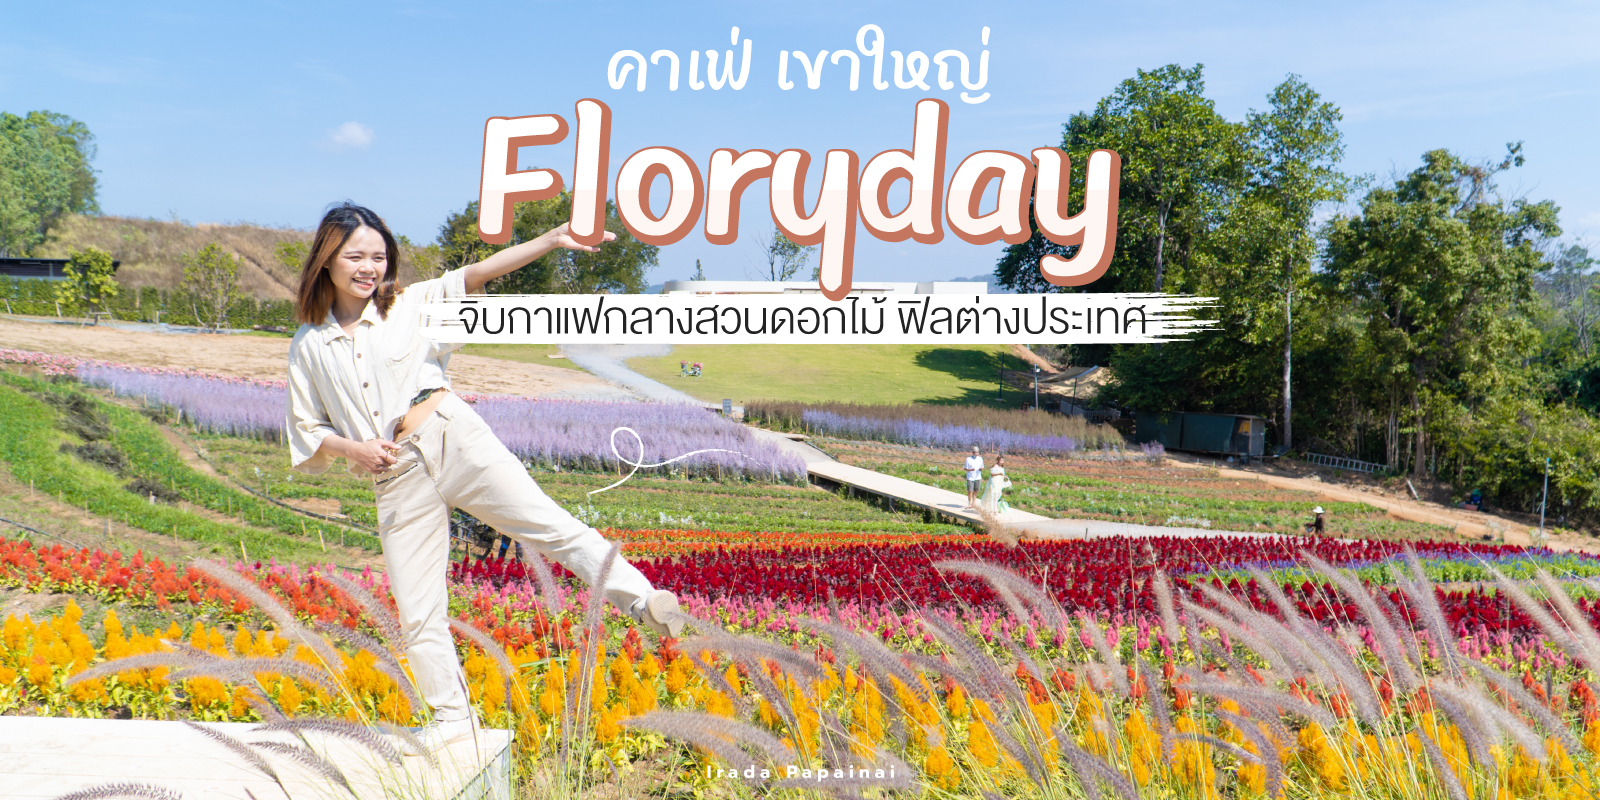 คาเฟ่เขาใหญ่ Floryday Khaoyai จิบกาแฟท่ามกลางสวนดอกไม้ ฟีลต่างประเทศ  #มันสนุก